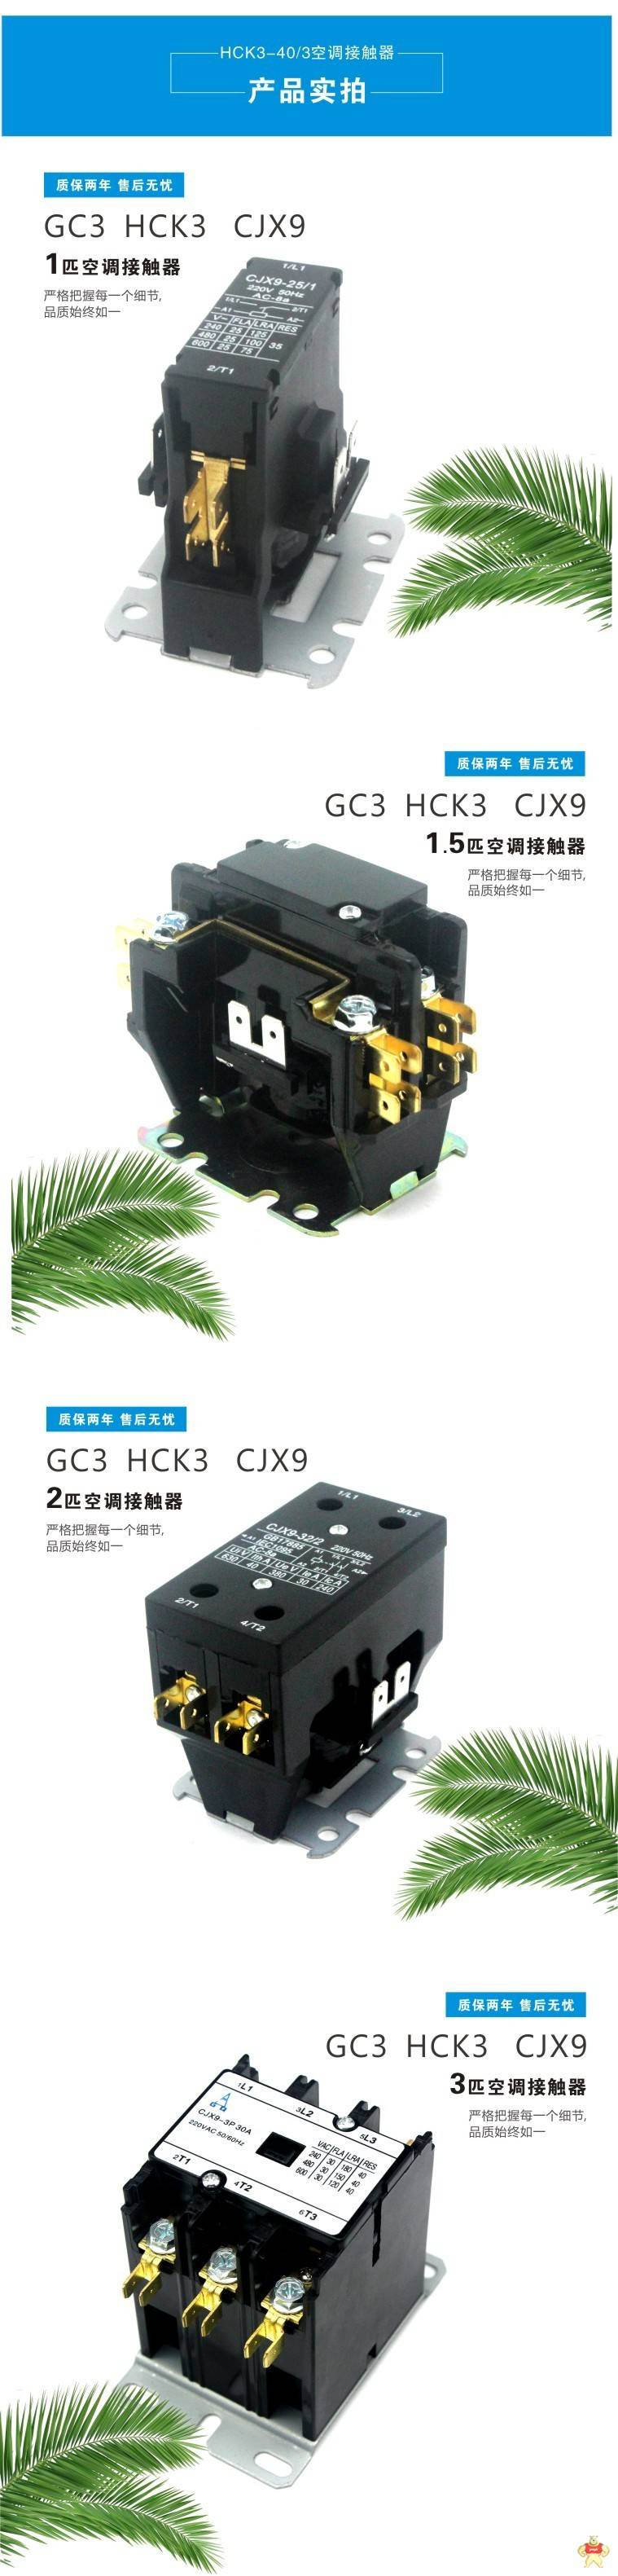 空调交流接触器 NCK3-25 cjx9-25交流接触器 cjx9-25,NCK3-25,空调交流接触器,空调接触器,空调用交流接触器